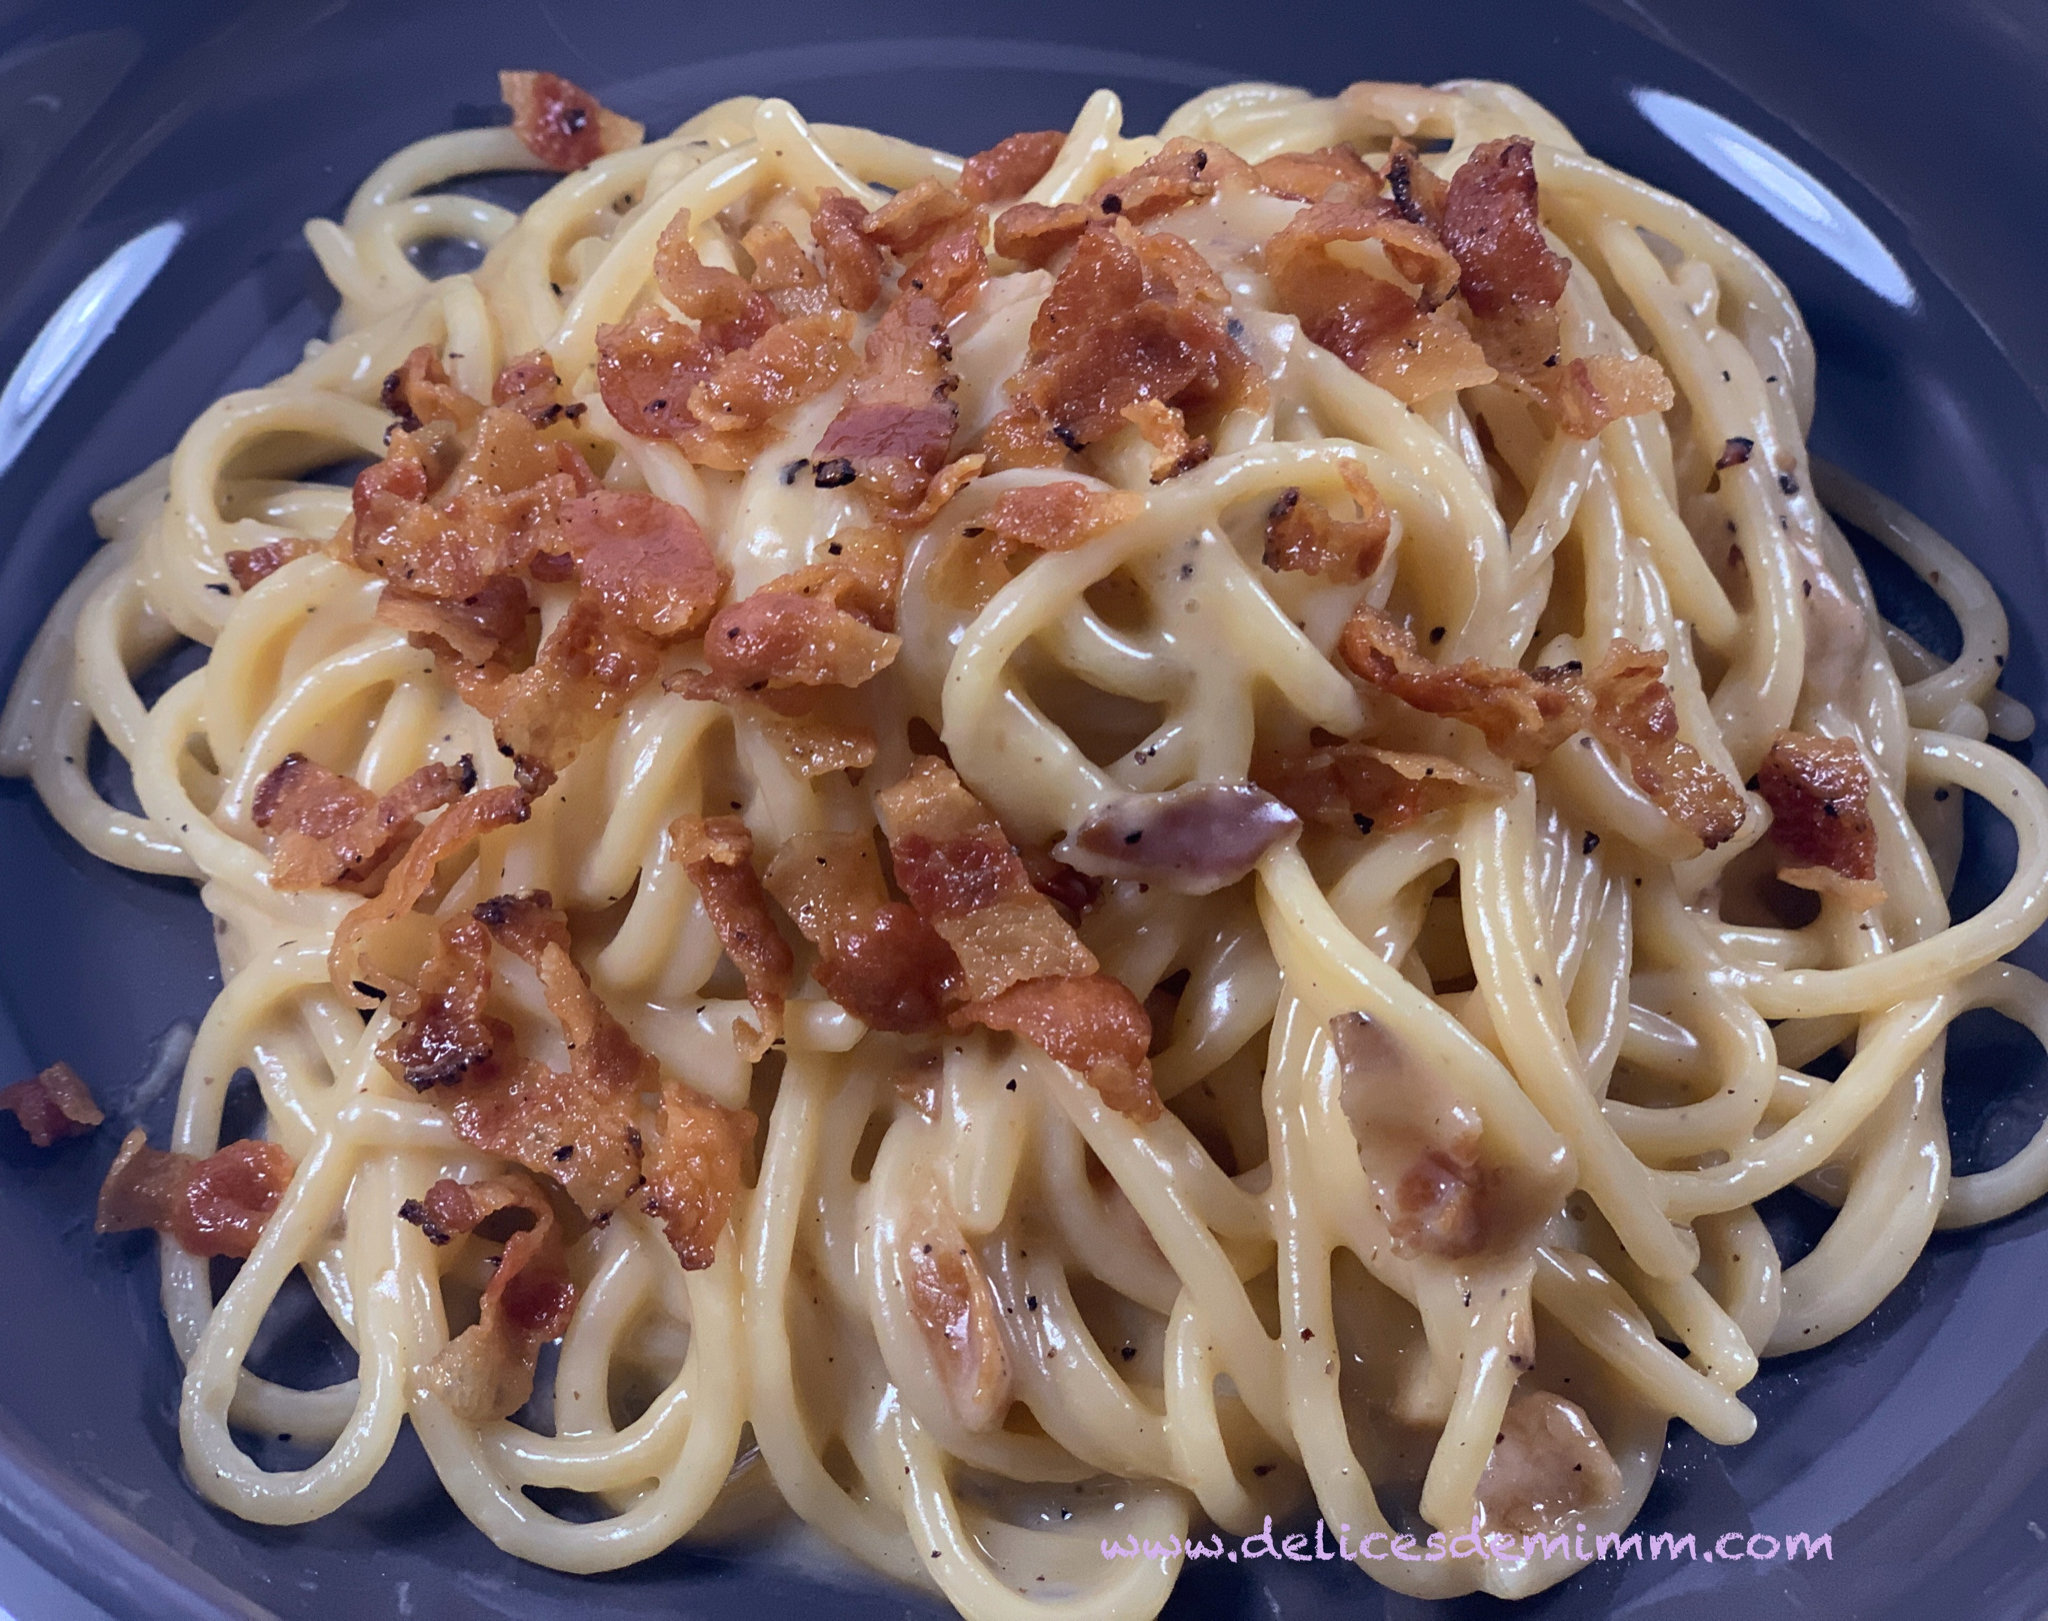 La recette des spaghetti carbonara de Simone Zanoni